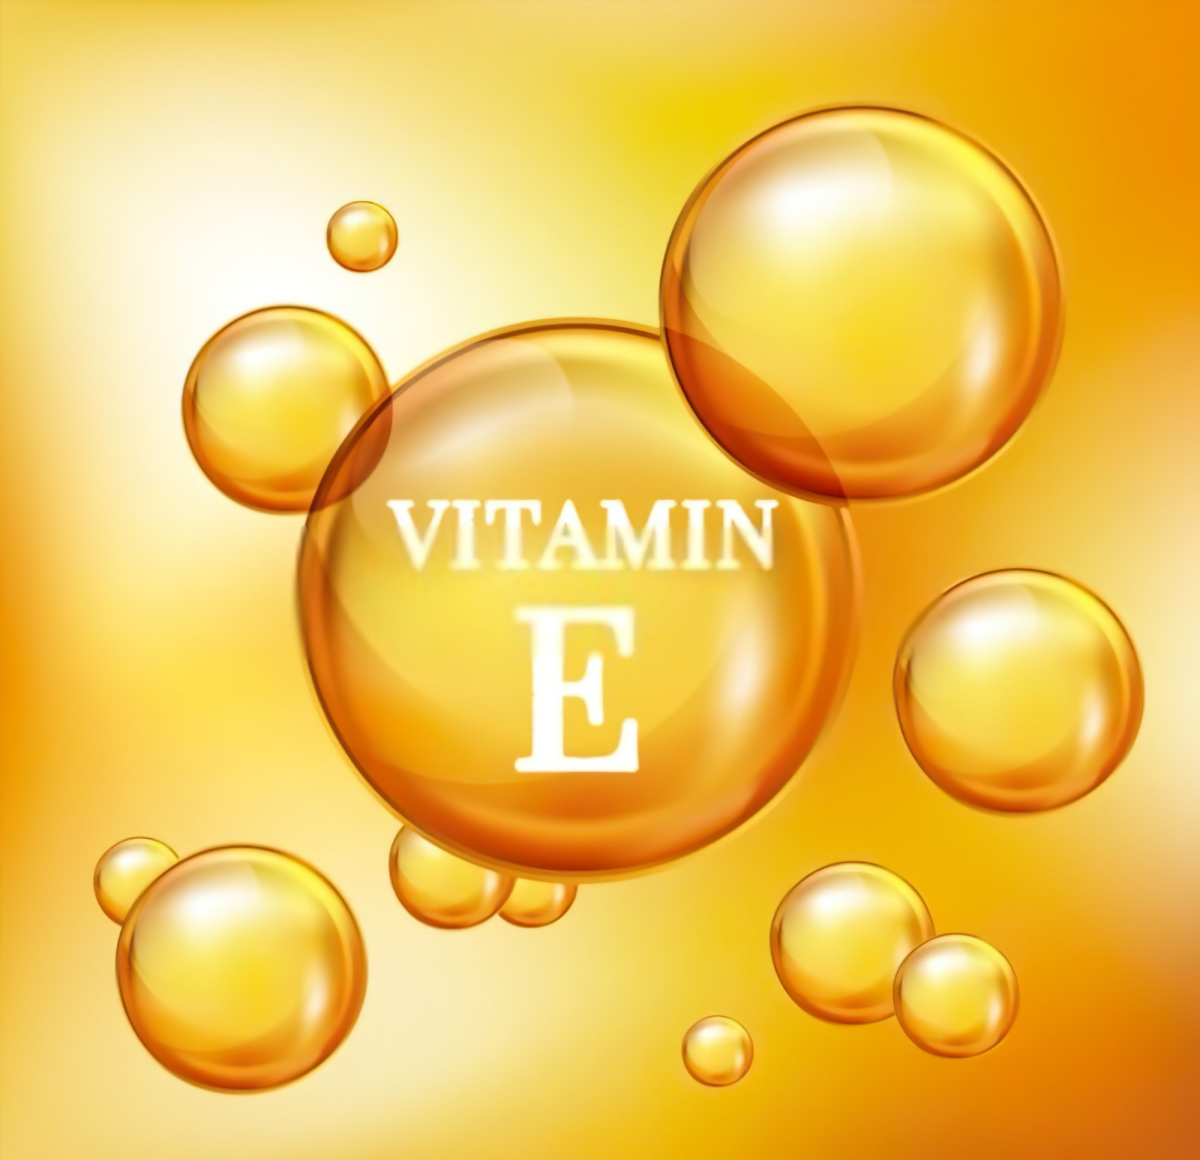 was passiert dem koerper wenn es vitamin e mangel gibt